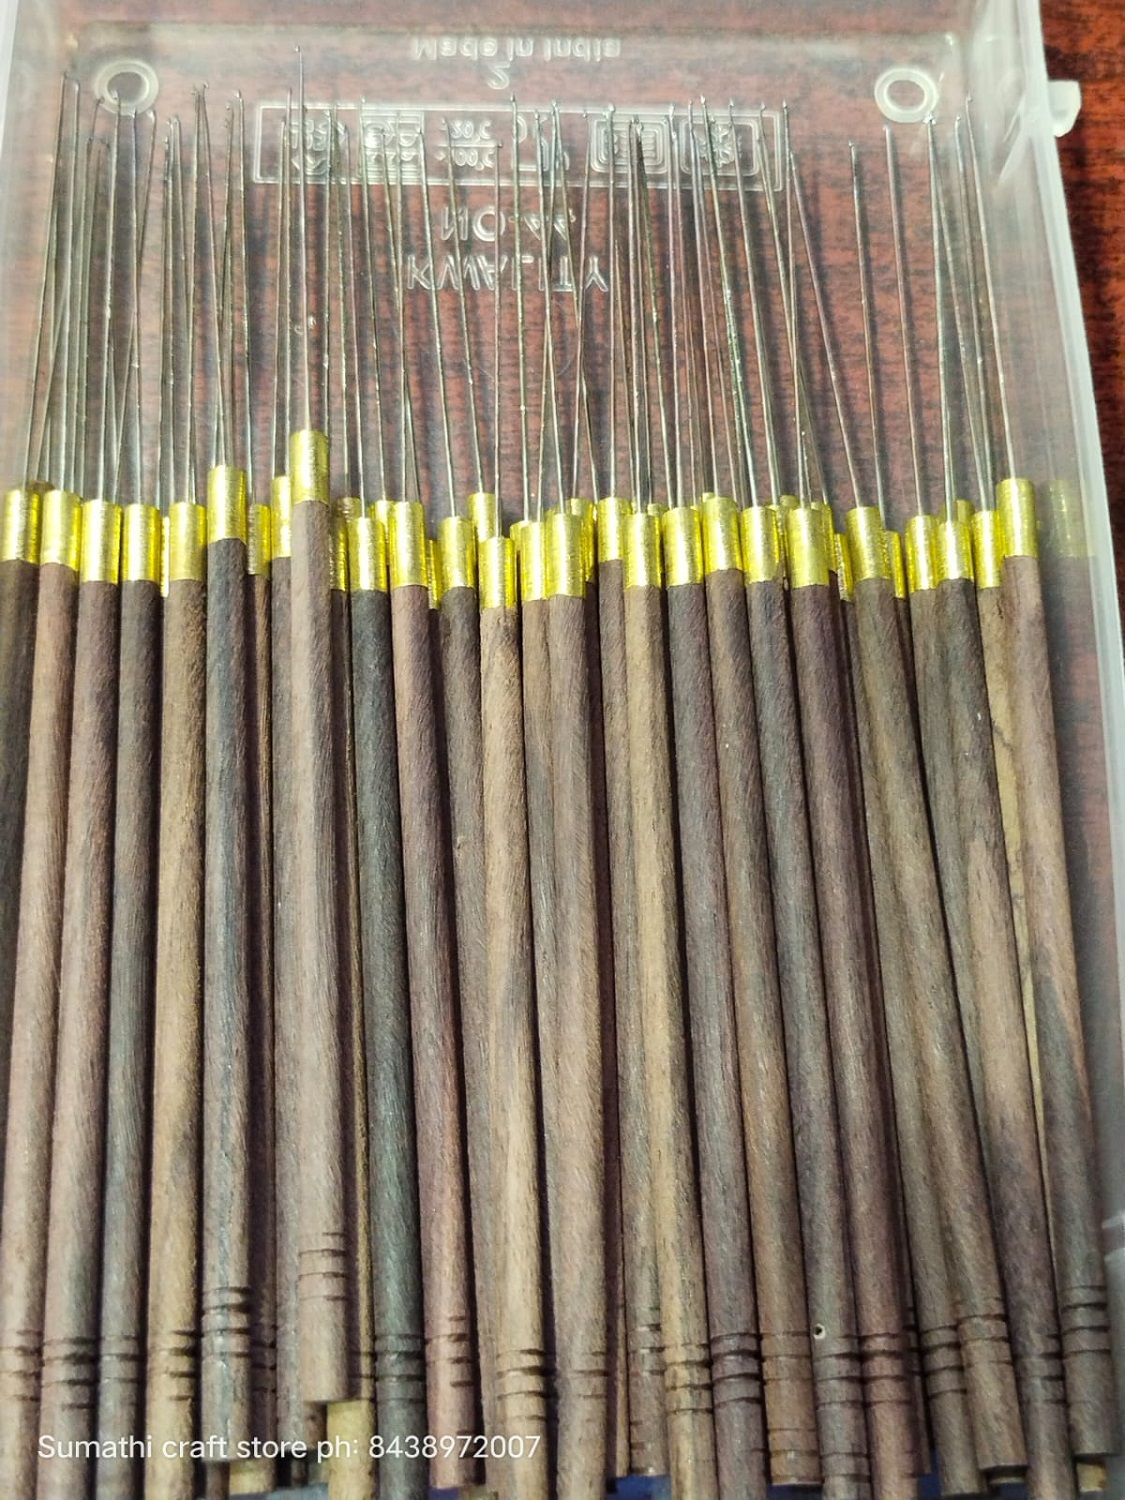 Wooden Needle – Sumathi